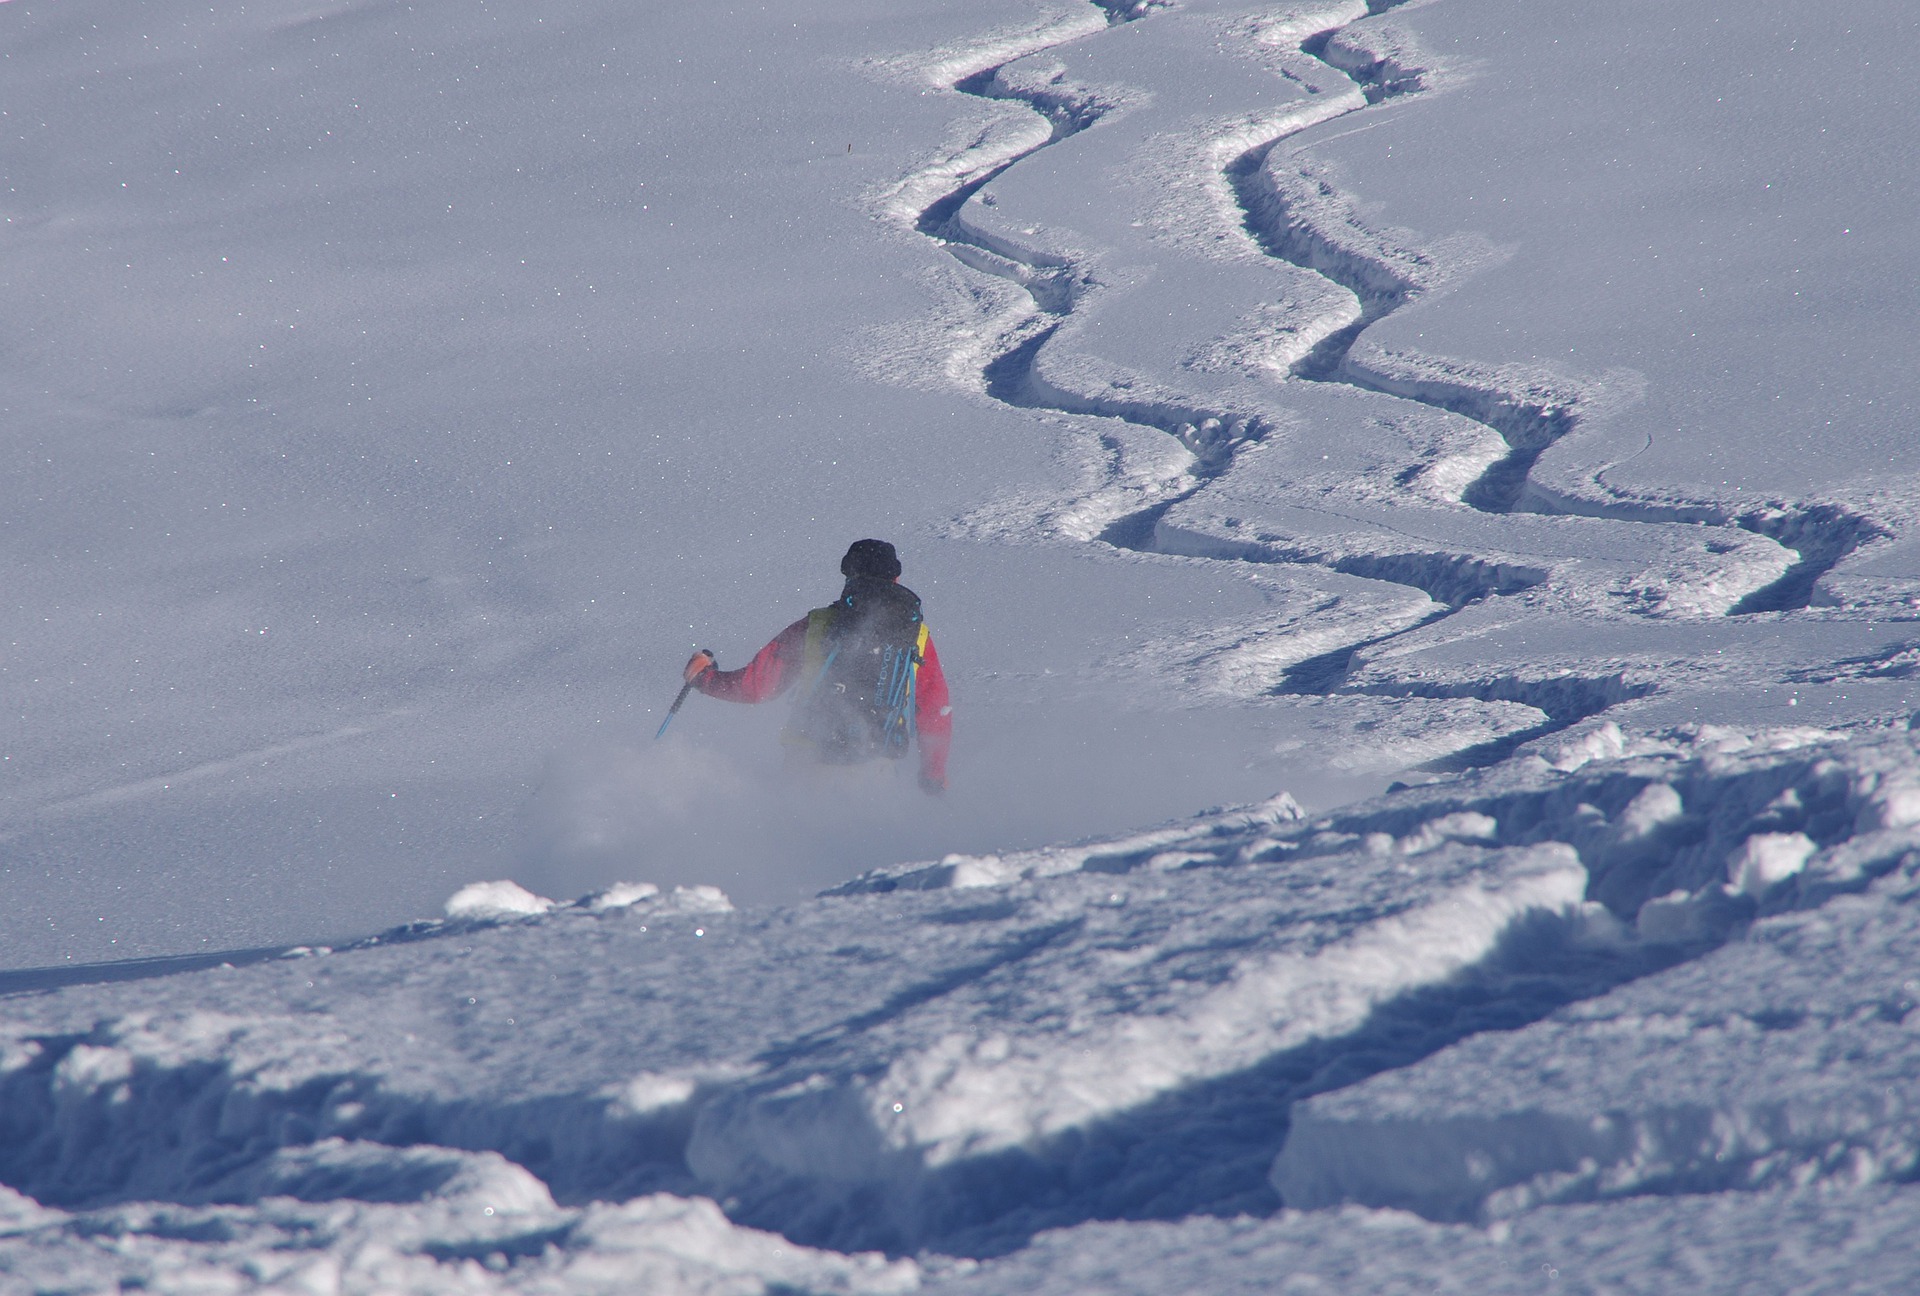 Skialpinismus - pohyb na lyžích ve volném terénu - 6. díl - Lavinové vybavení